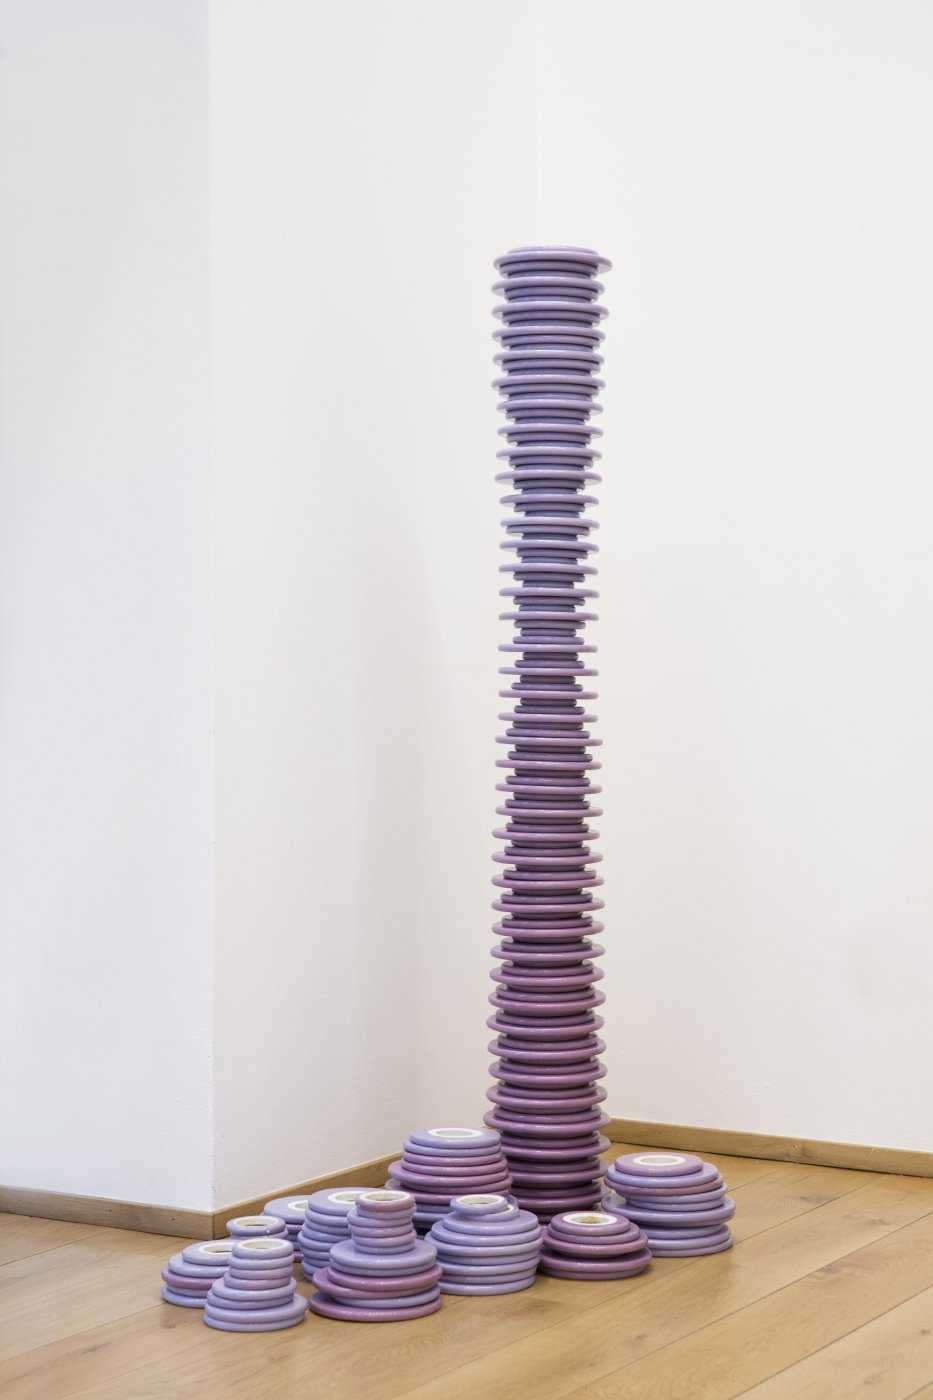 installation-sculptures_from_casa_jorn-officinesaffi-9.jpg